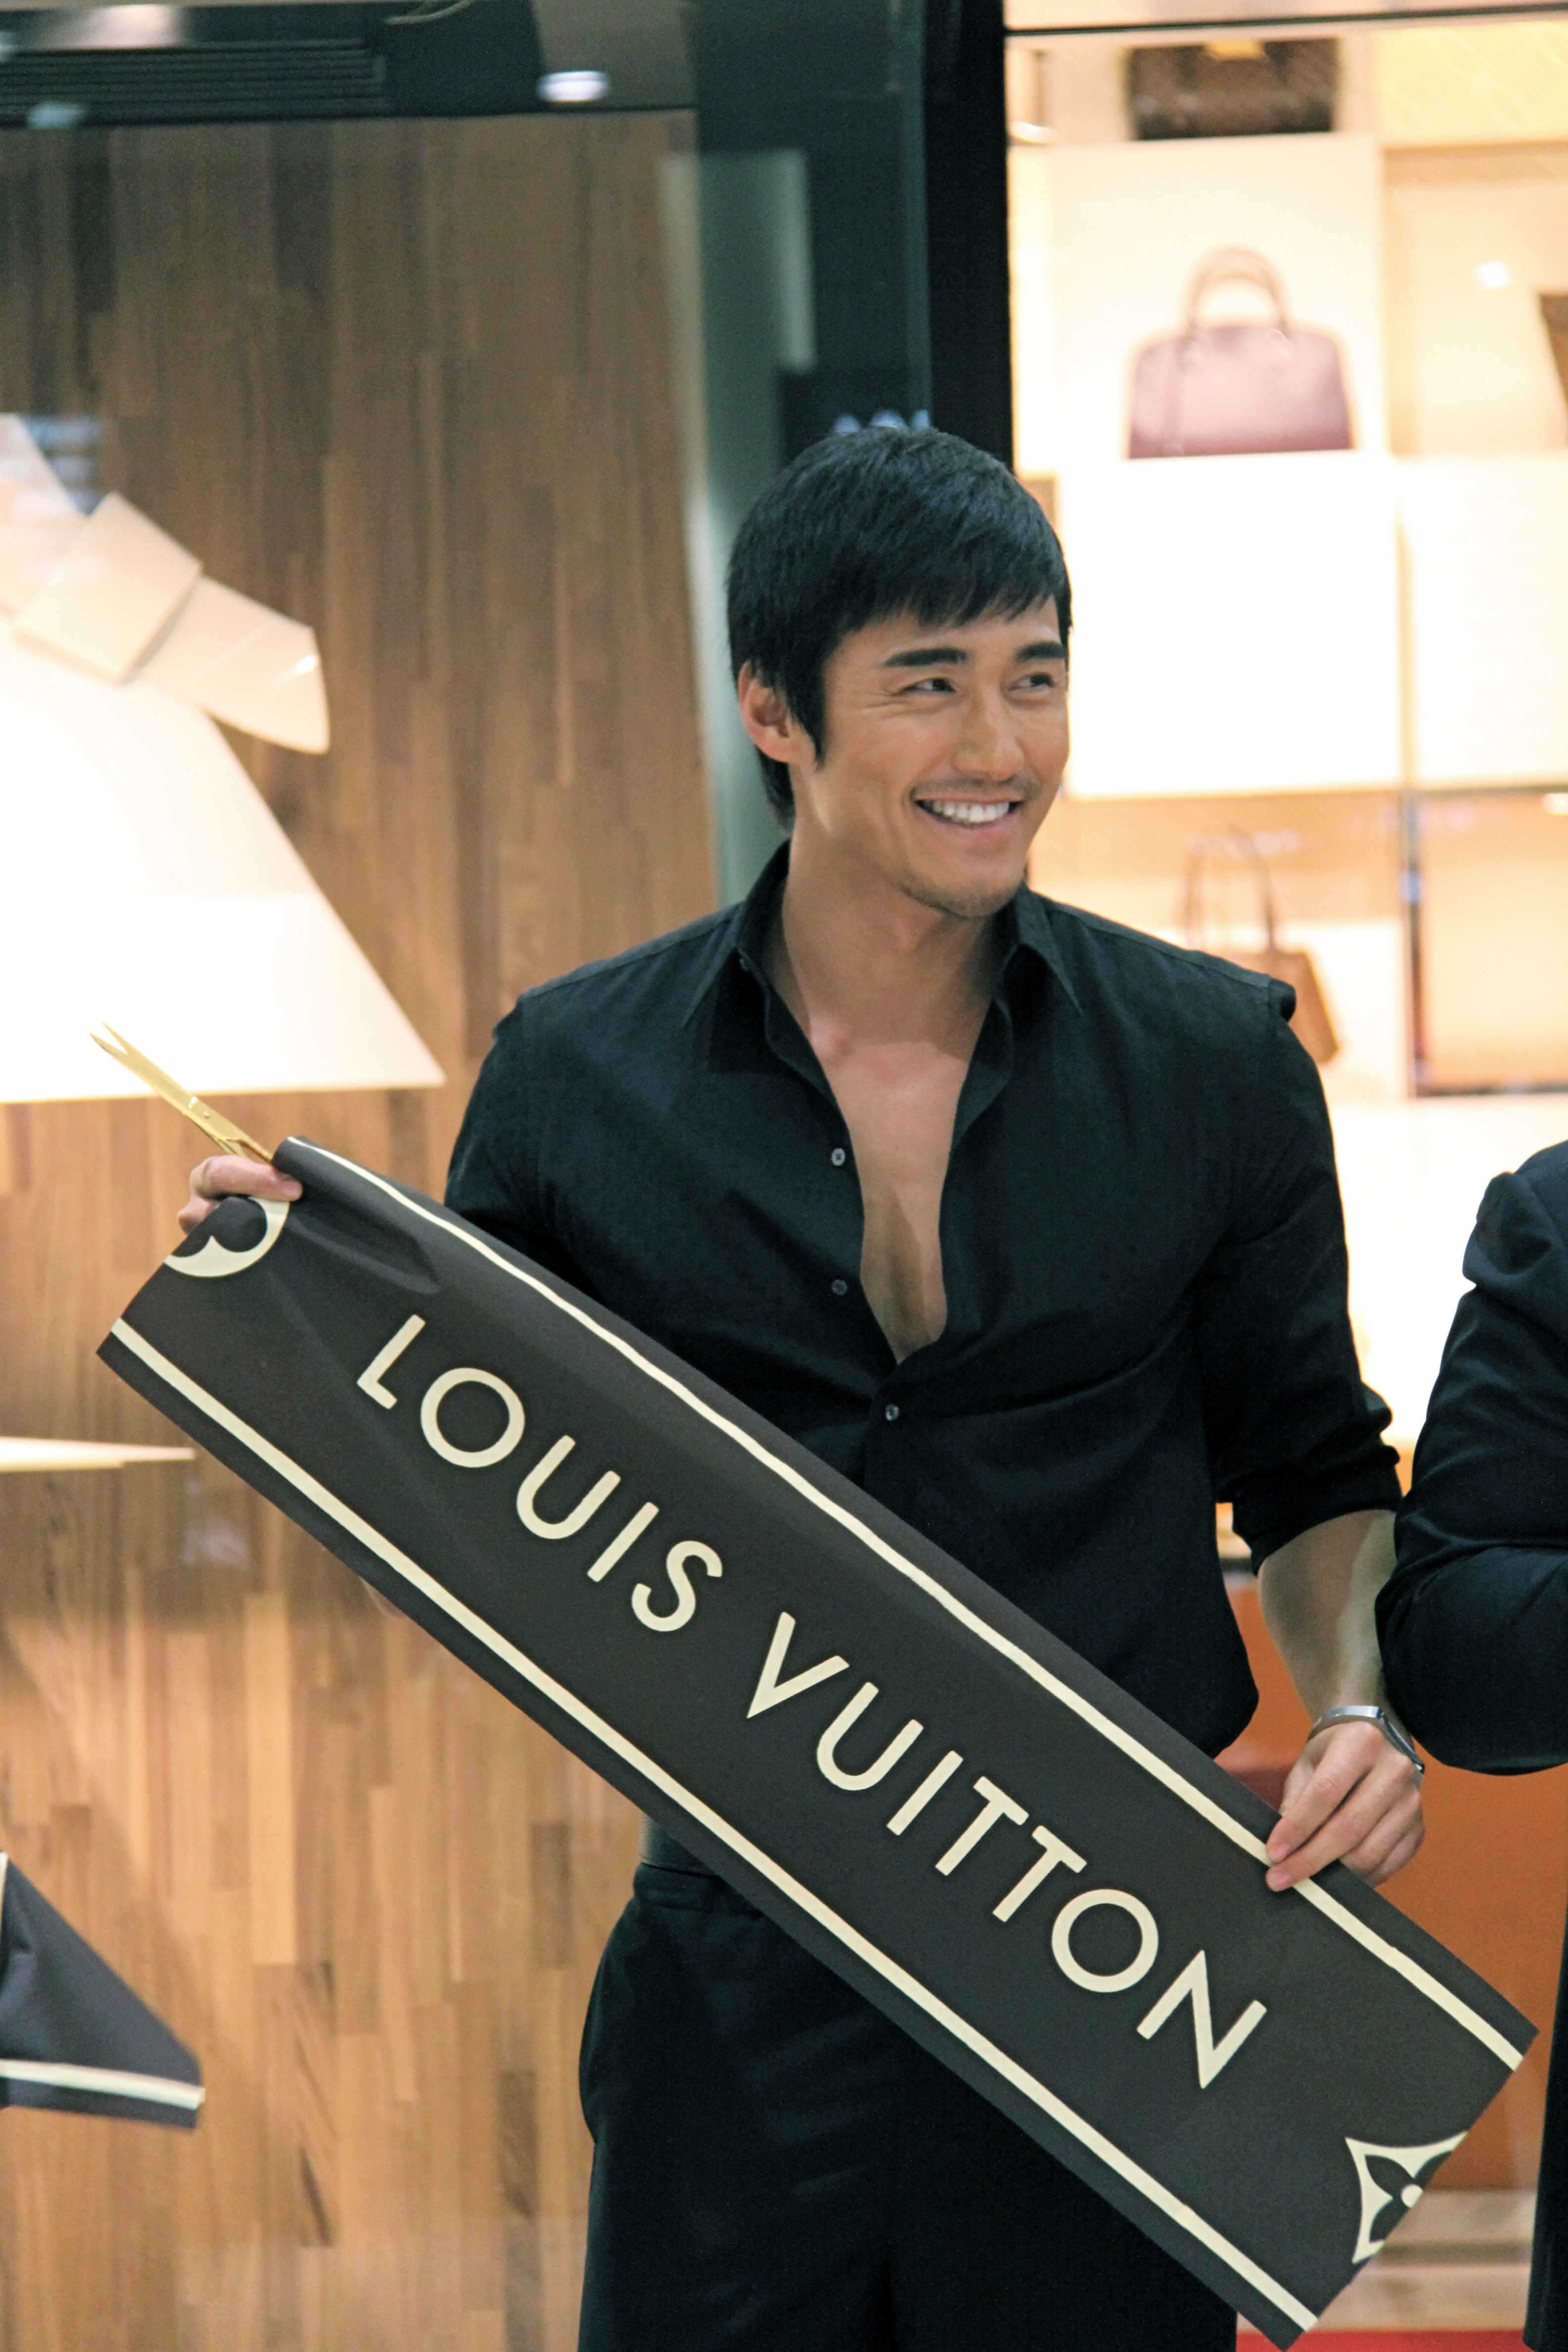 Louis Vuitton Sales Associate Reviews